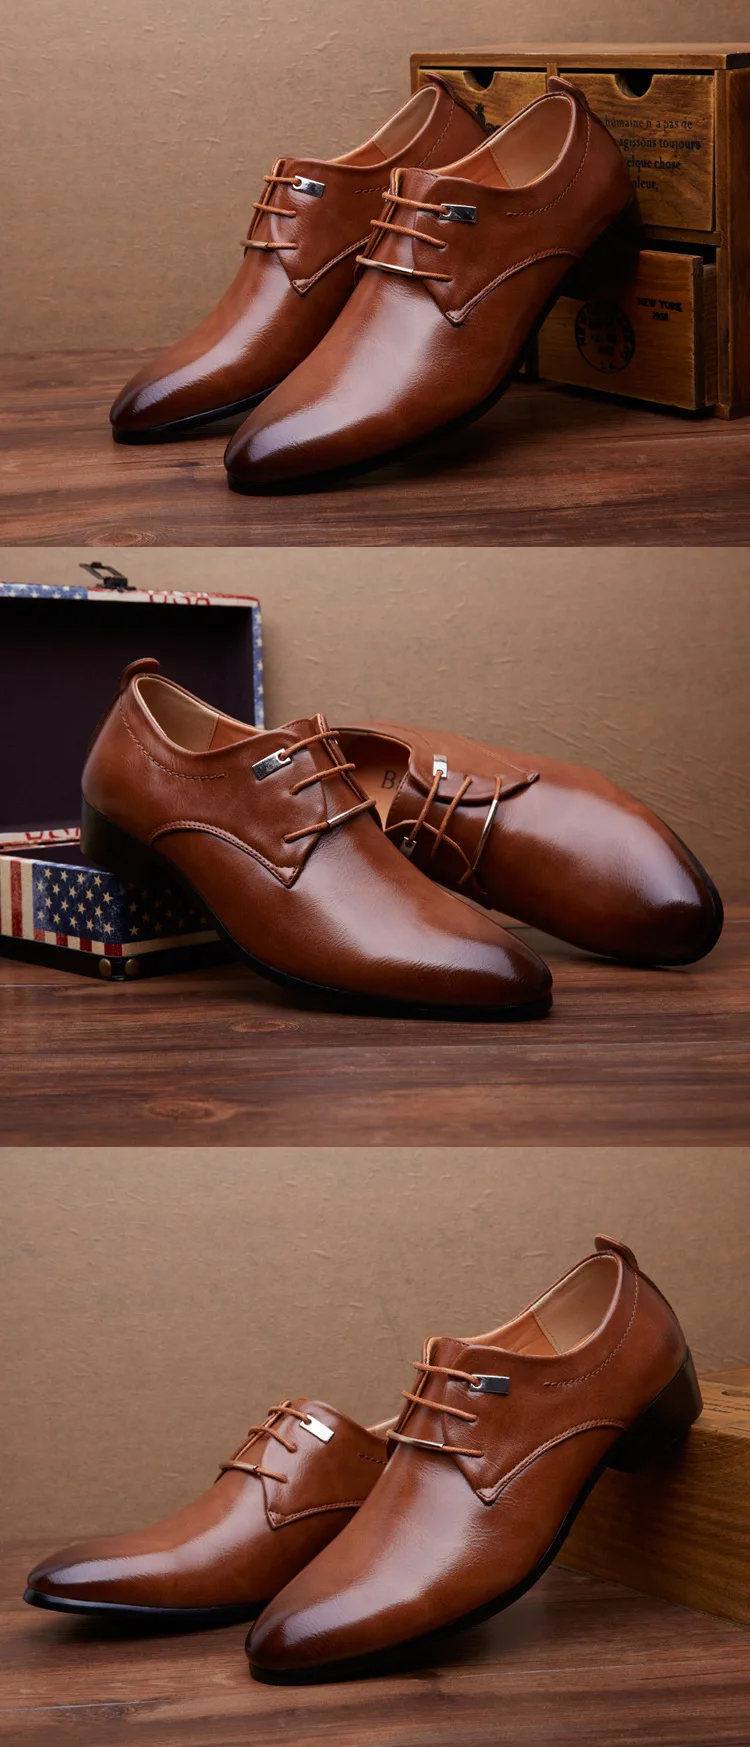 Merkmak/мужские кожаные туфли; мужские туфли в деловом стиле; классические стильные туфли на плоской подошве; цвет коричневый, черный; мужские туфли-оксфорды на шнуровке с острым носком